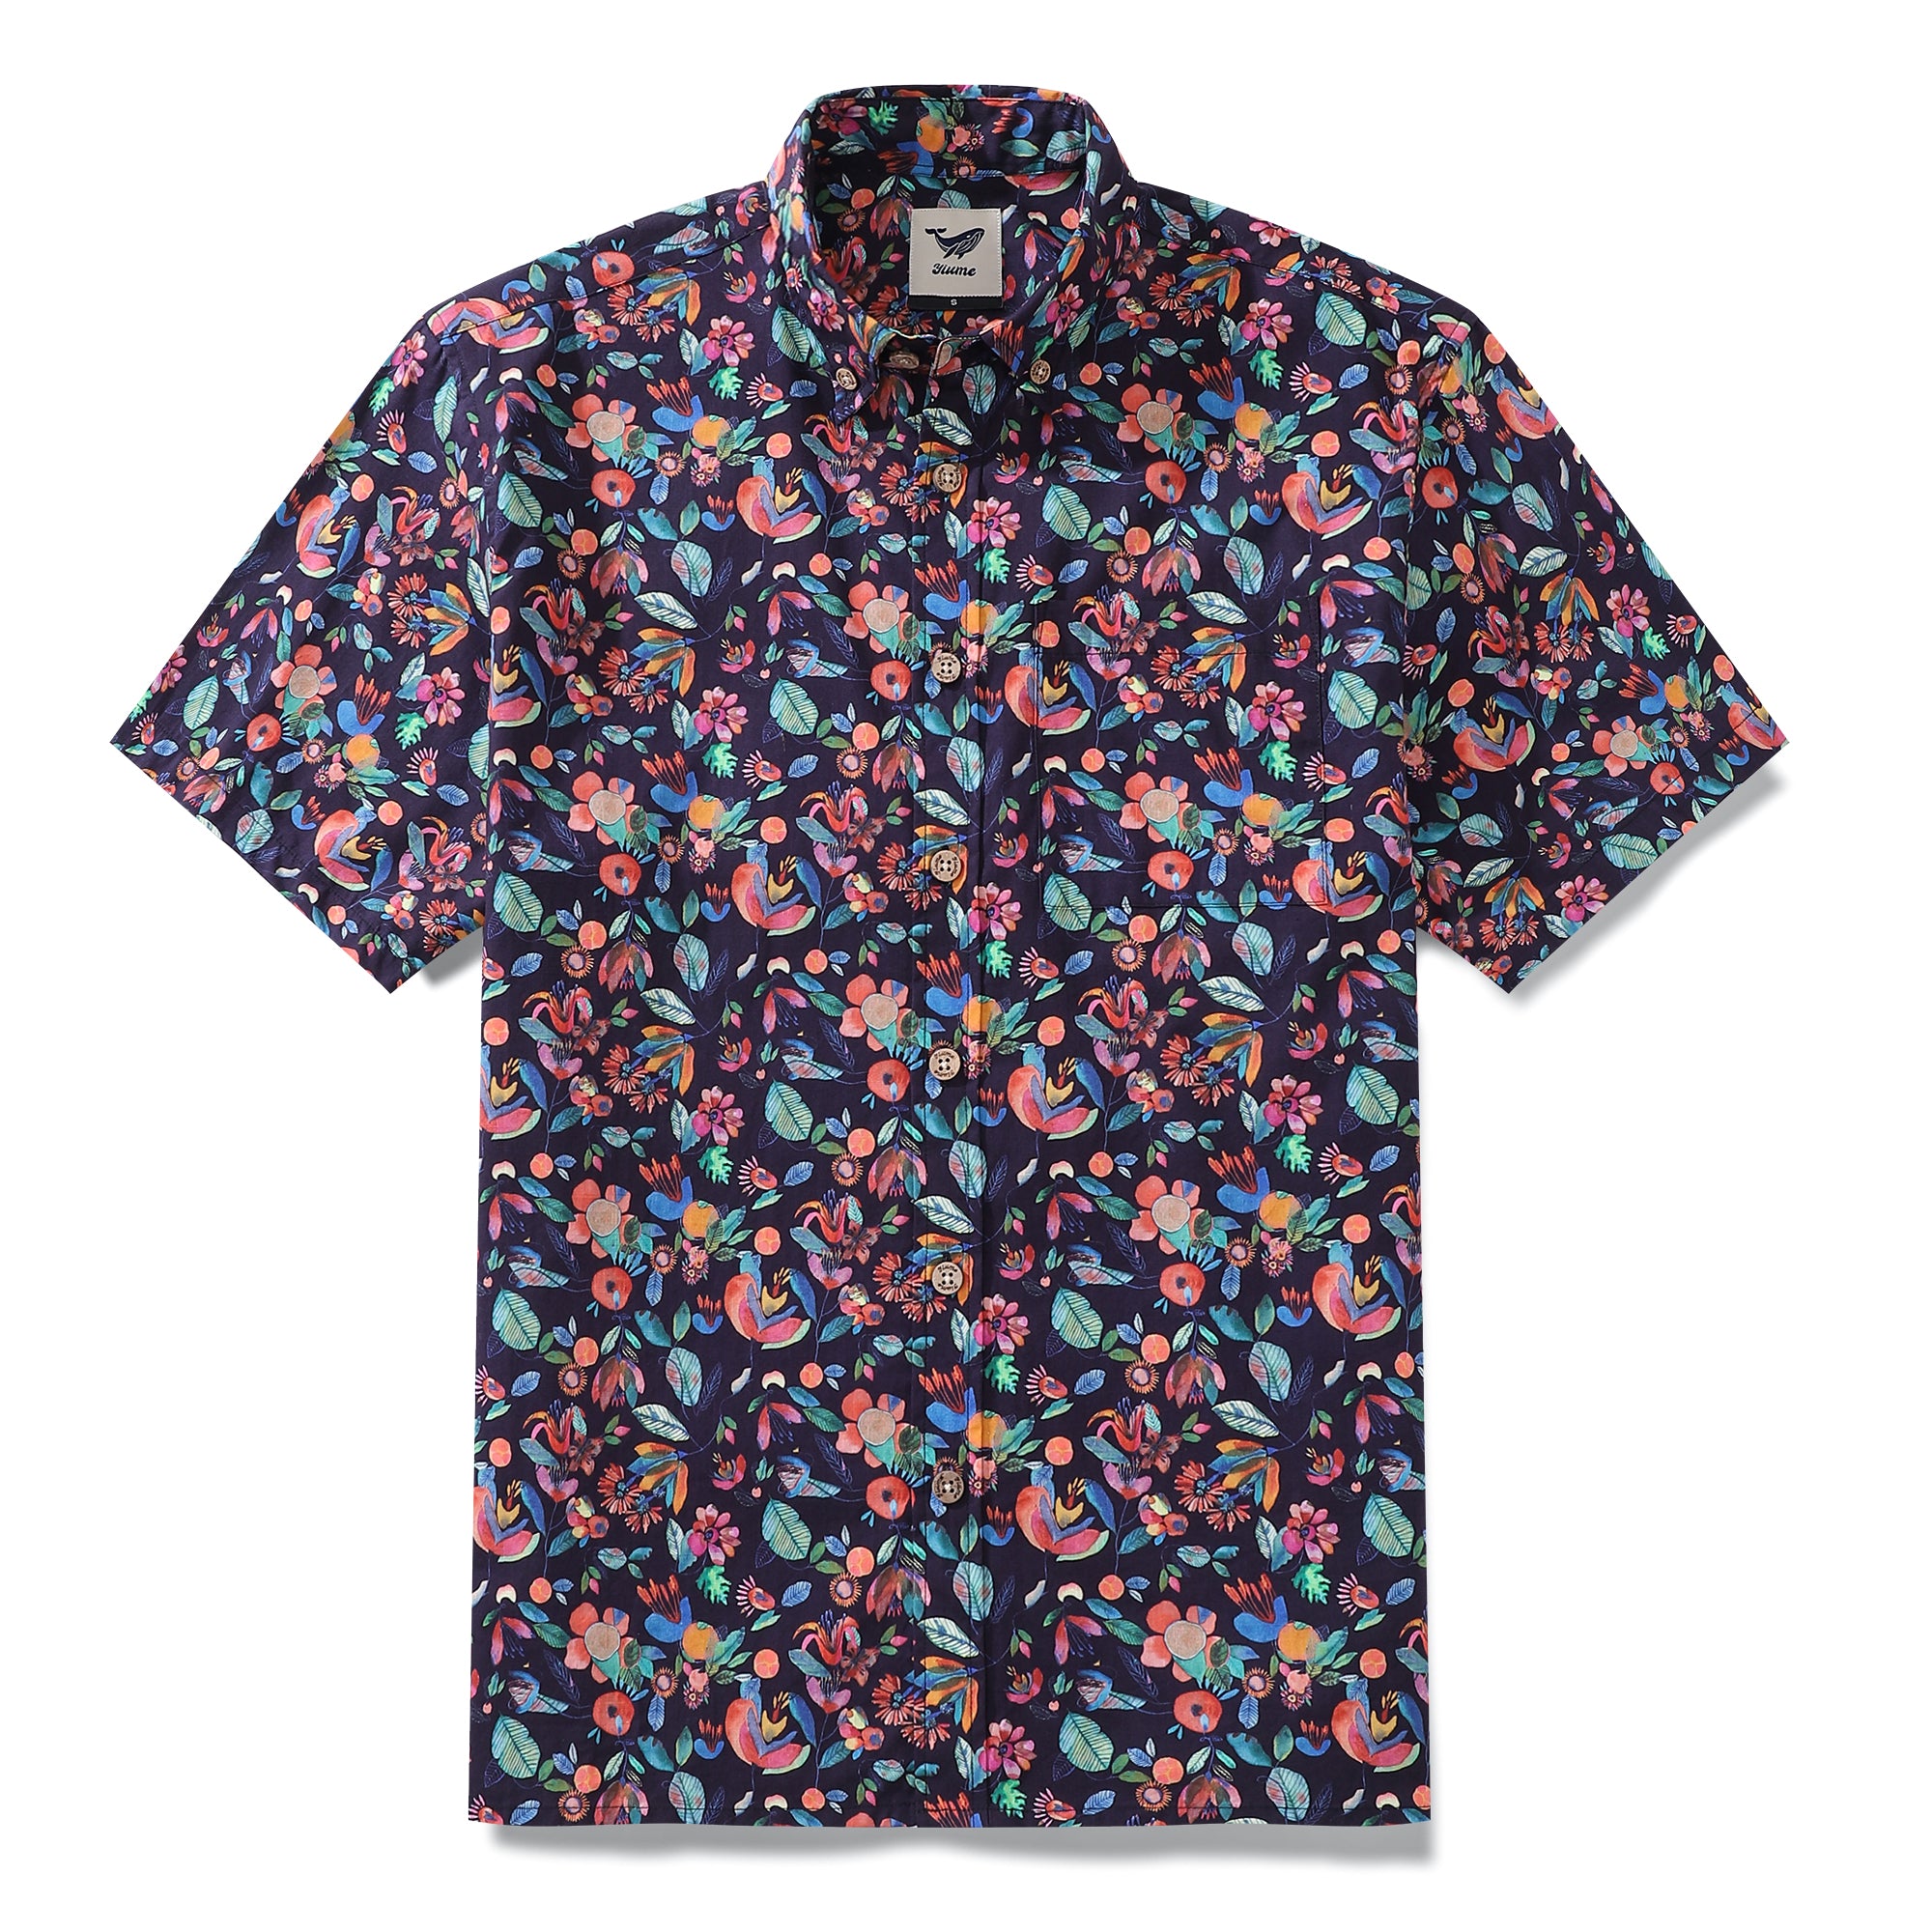 Men's Hawaiian Shirt Fluttering Colored "Butterflies" Print By Maria Montiel Cotton Button-down Short Sleeve Aloha Shirt